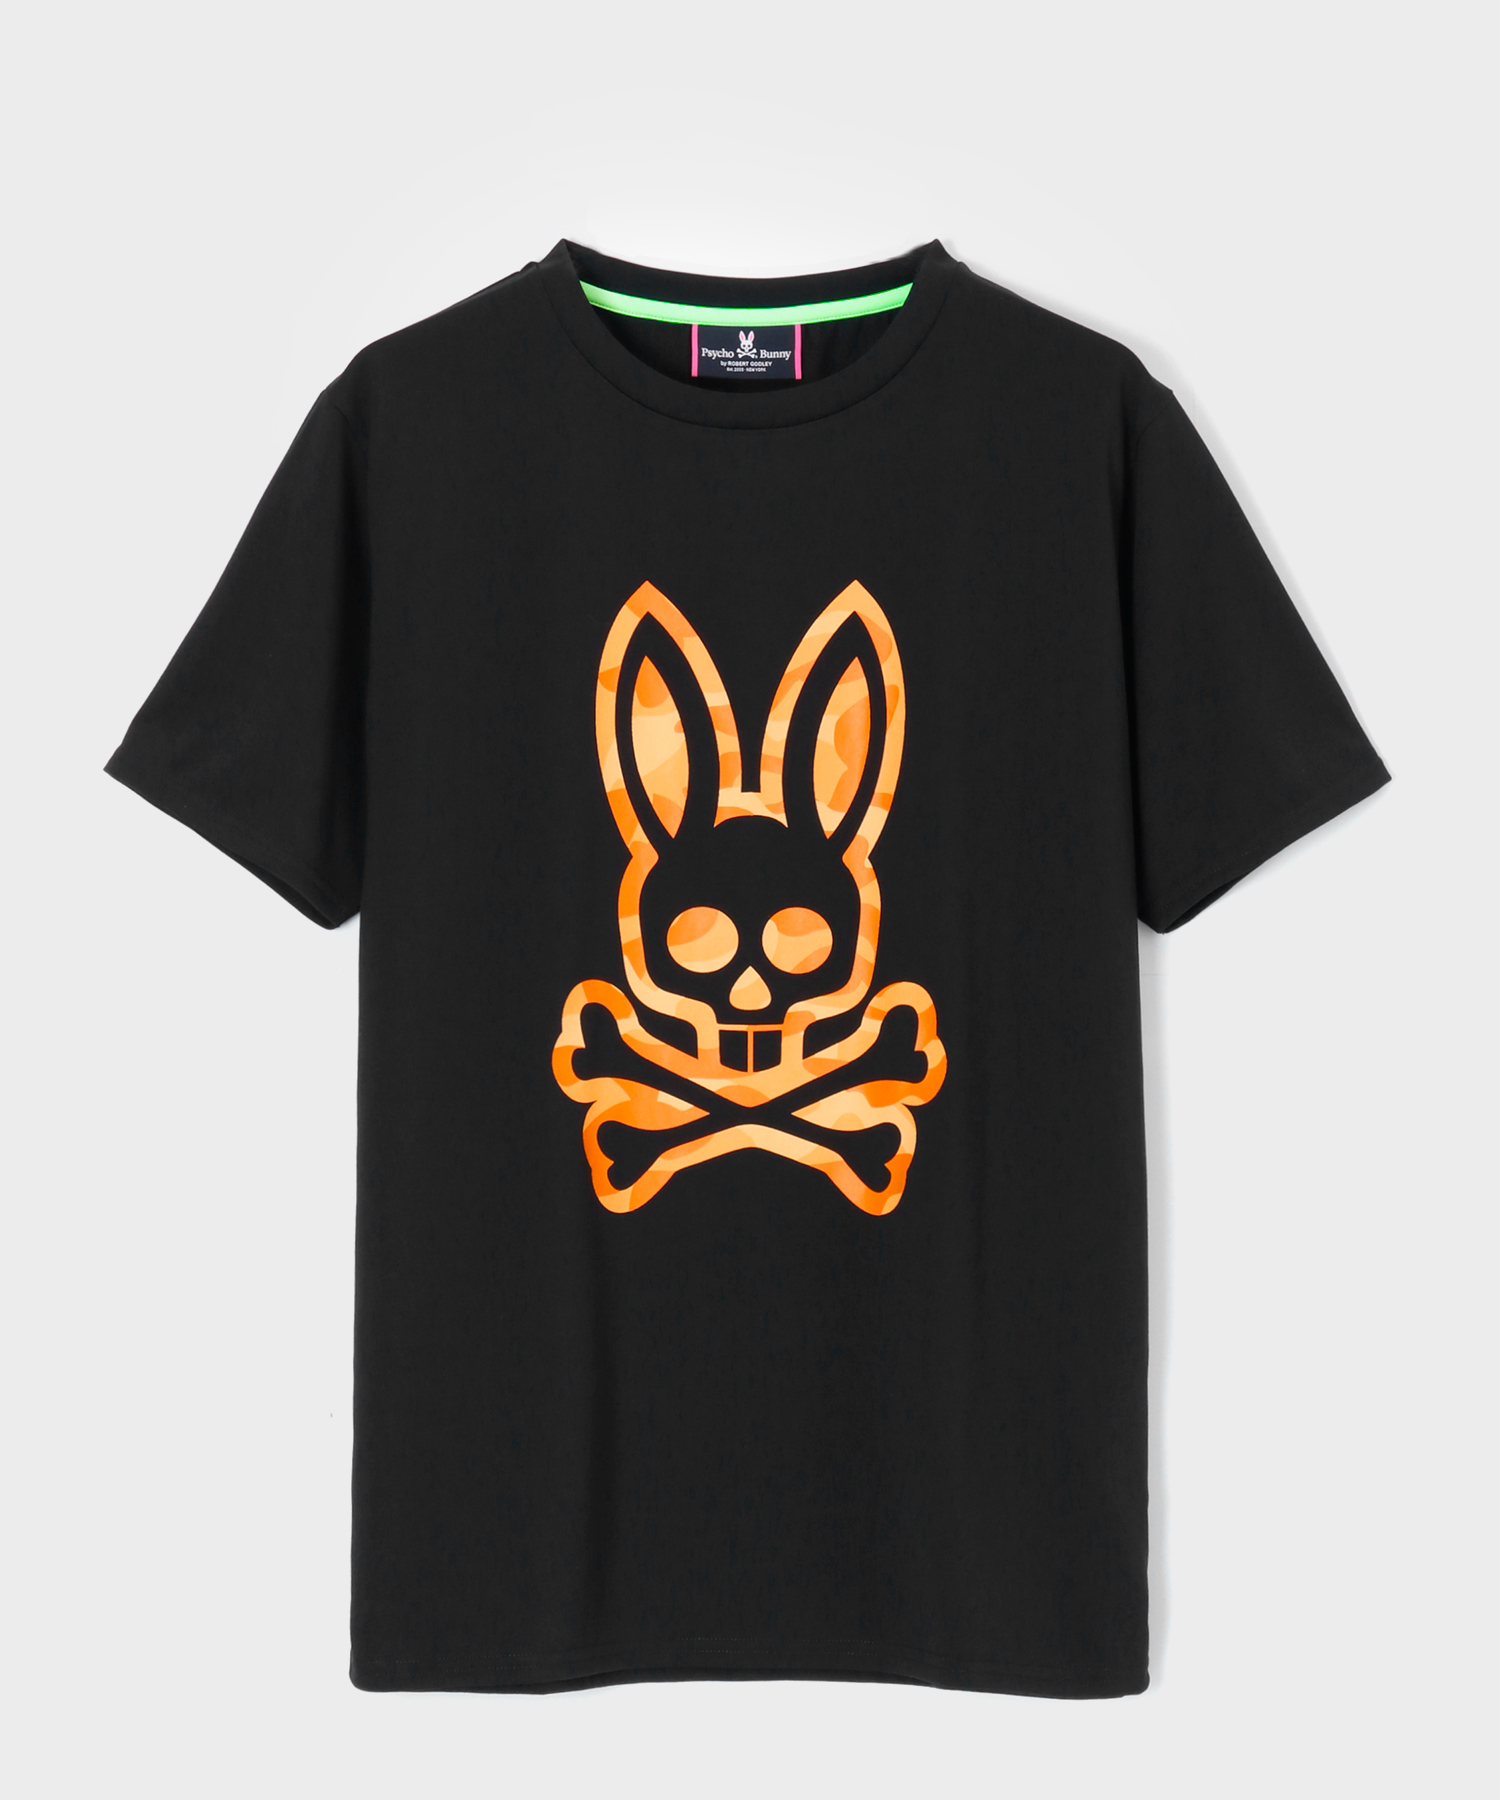 Psycho Bunny｜サイコバニー 公式ブランドサイト – Psycho Bunny JAPAN